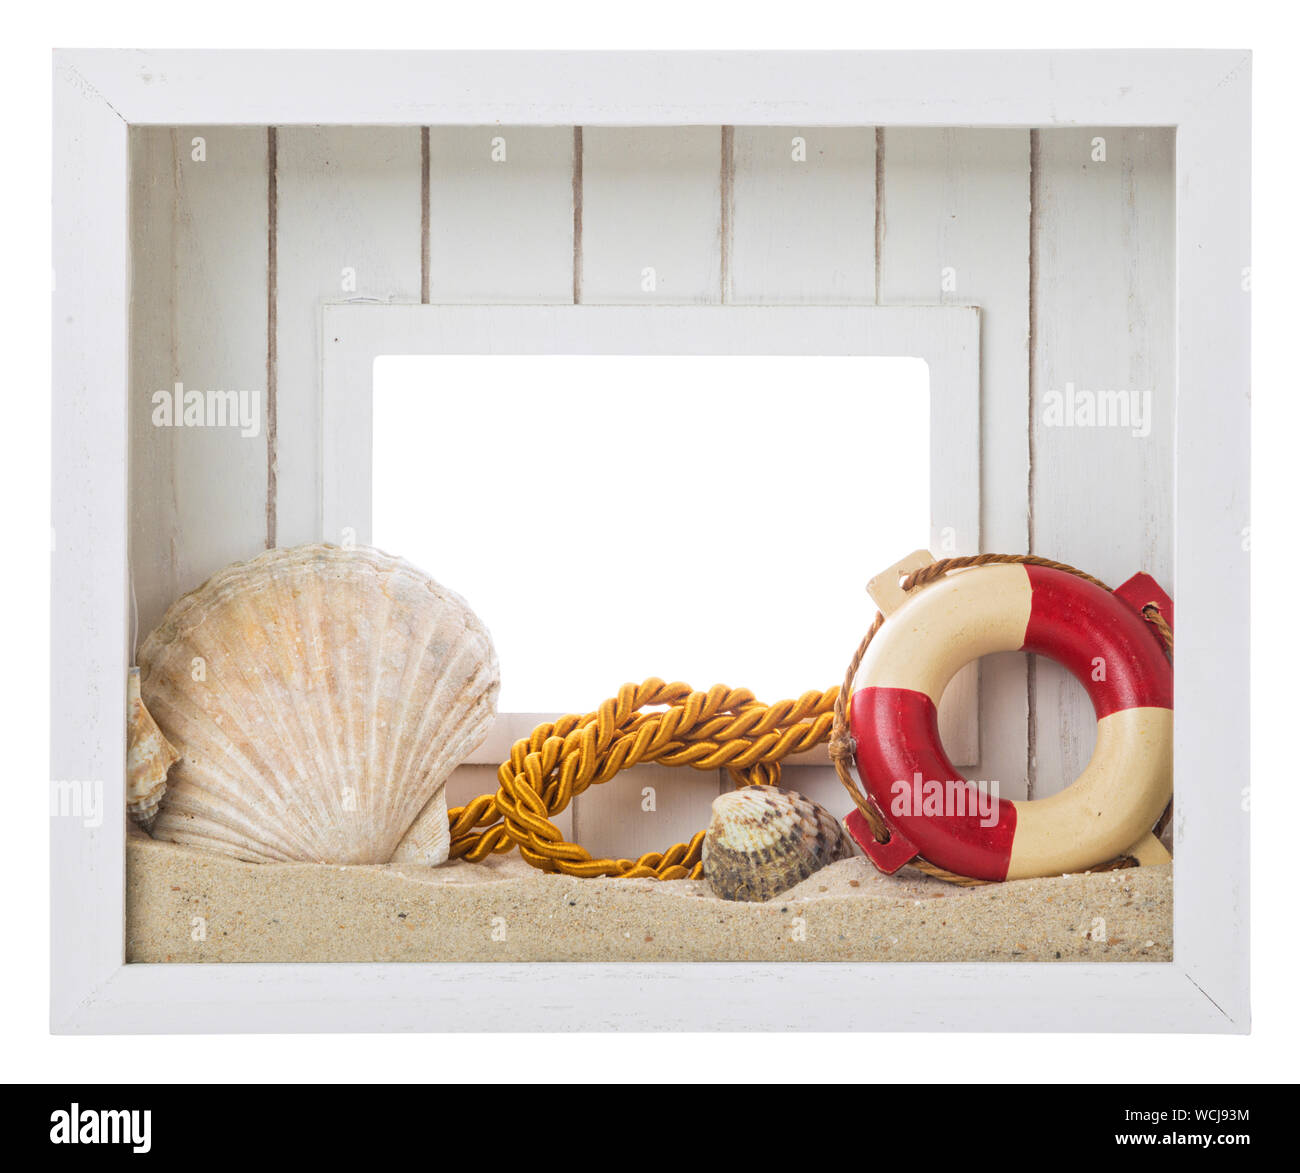 Weiße Holz Bilderrahmen mit Strand und Meer Souvenirs dekoriert - Leben  Boje, Muscheln, Meer, Sand, goldenen Seil. Freistellungspfaden  Stockfotografie - Alamy